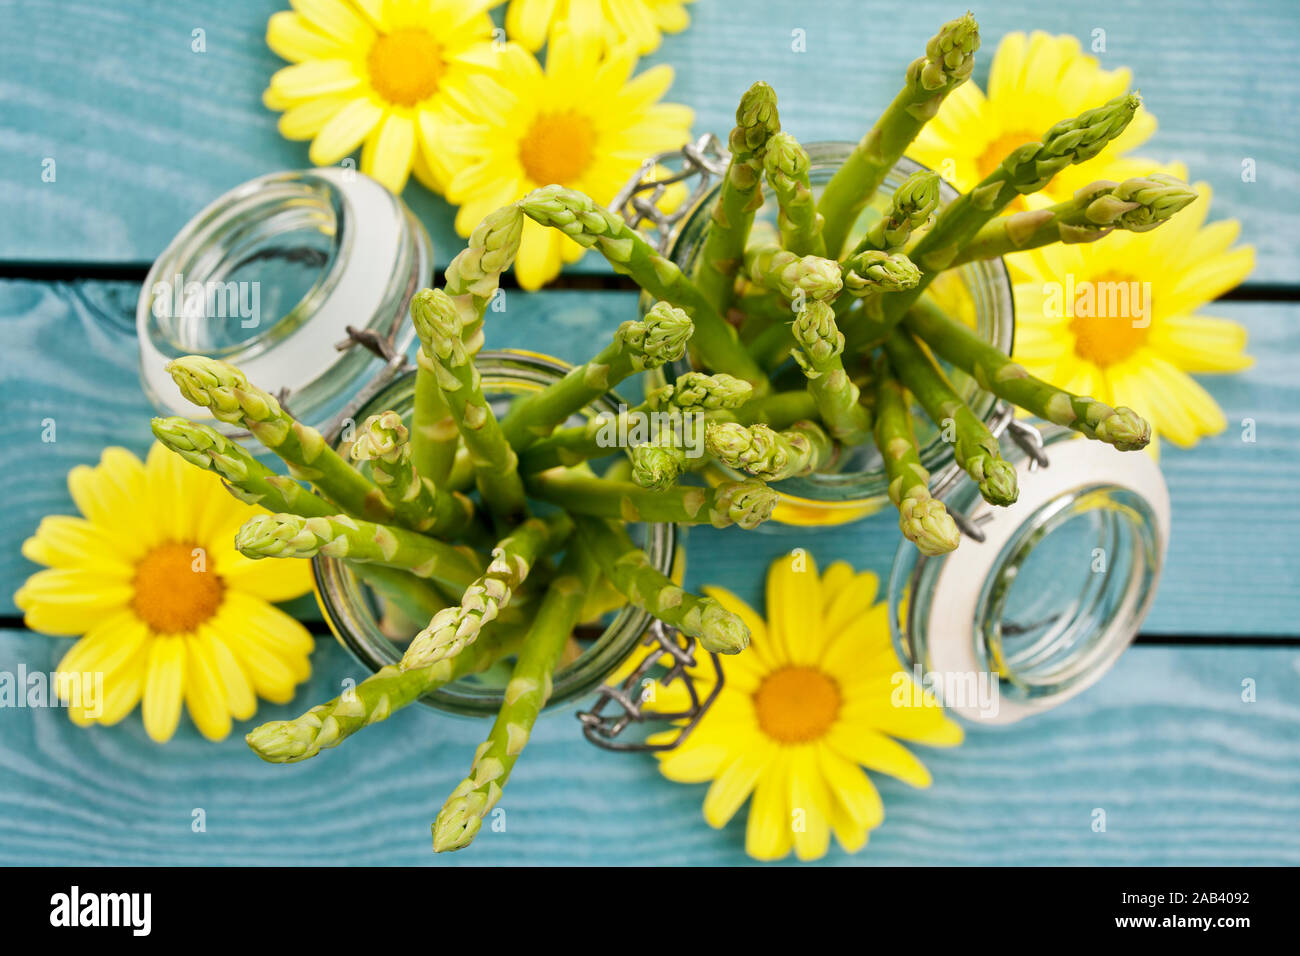 Grüner Spargel dans Einmachgläser anbei, einige gelbe Blüten |les asperges vertes en pots, voici quelques fleurs jaunes| Banque D'Images